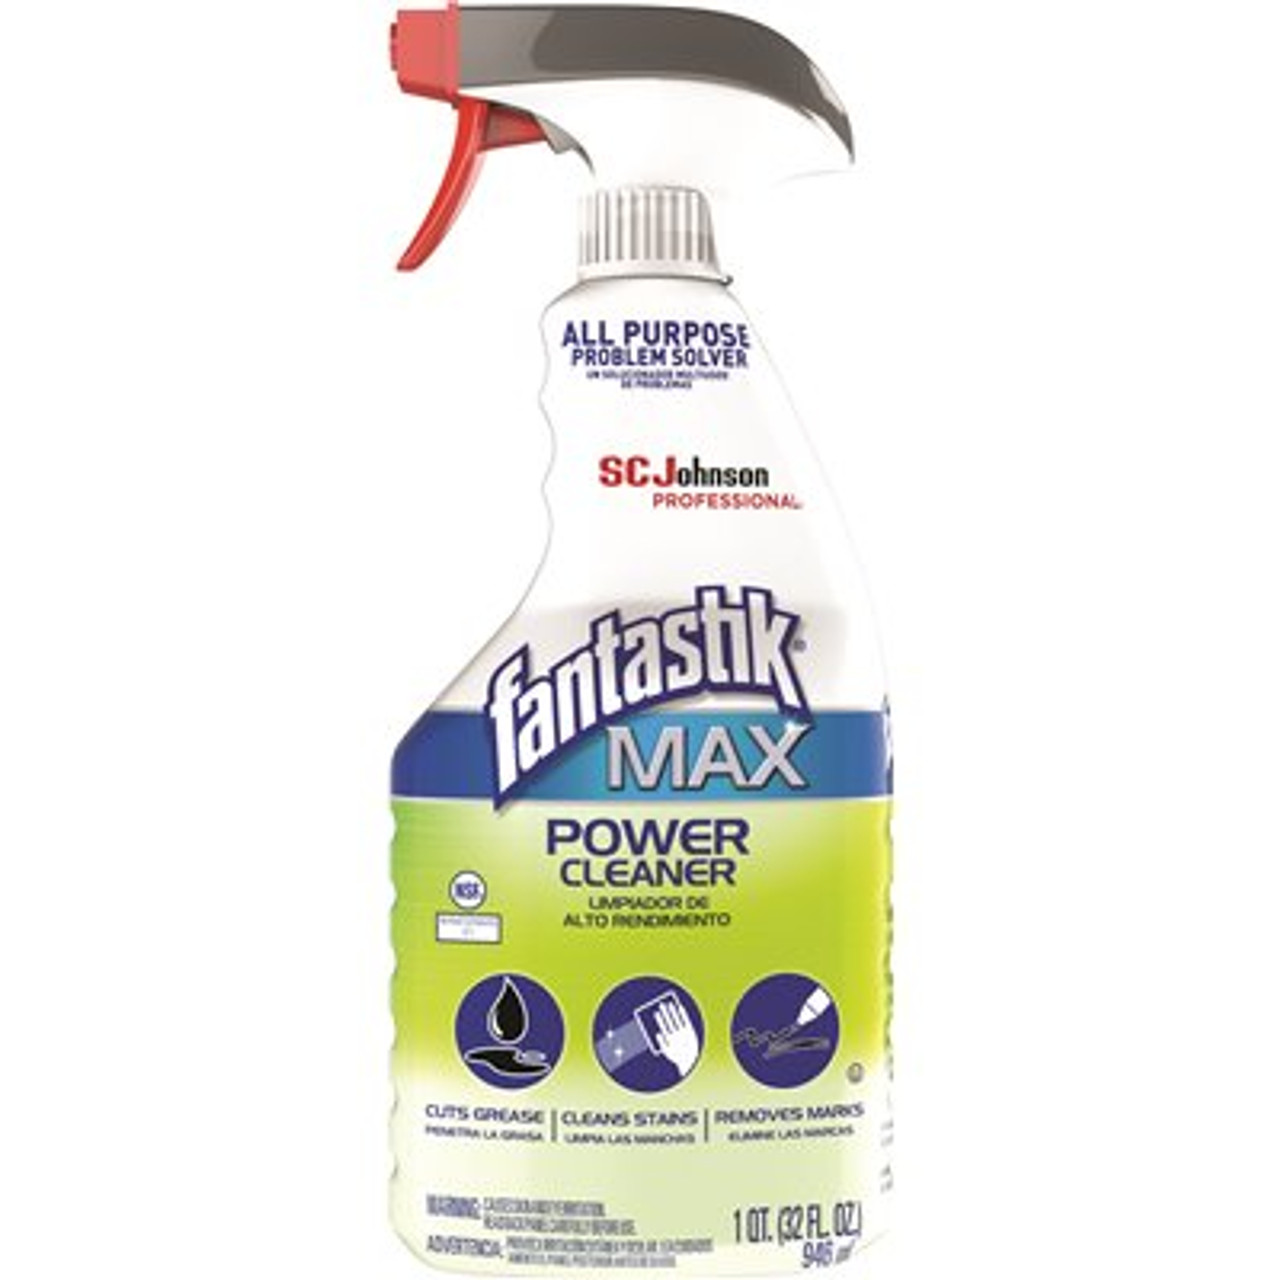 FANTASTIK Max Power Cleaner 32 Oz Case Of 8